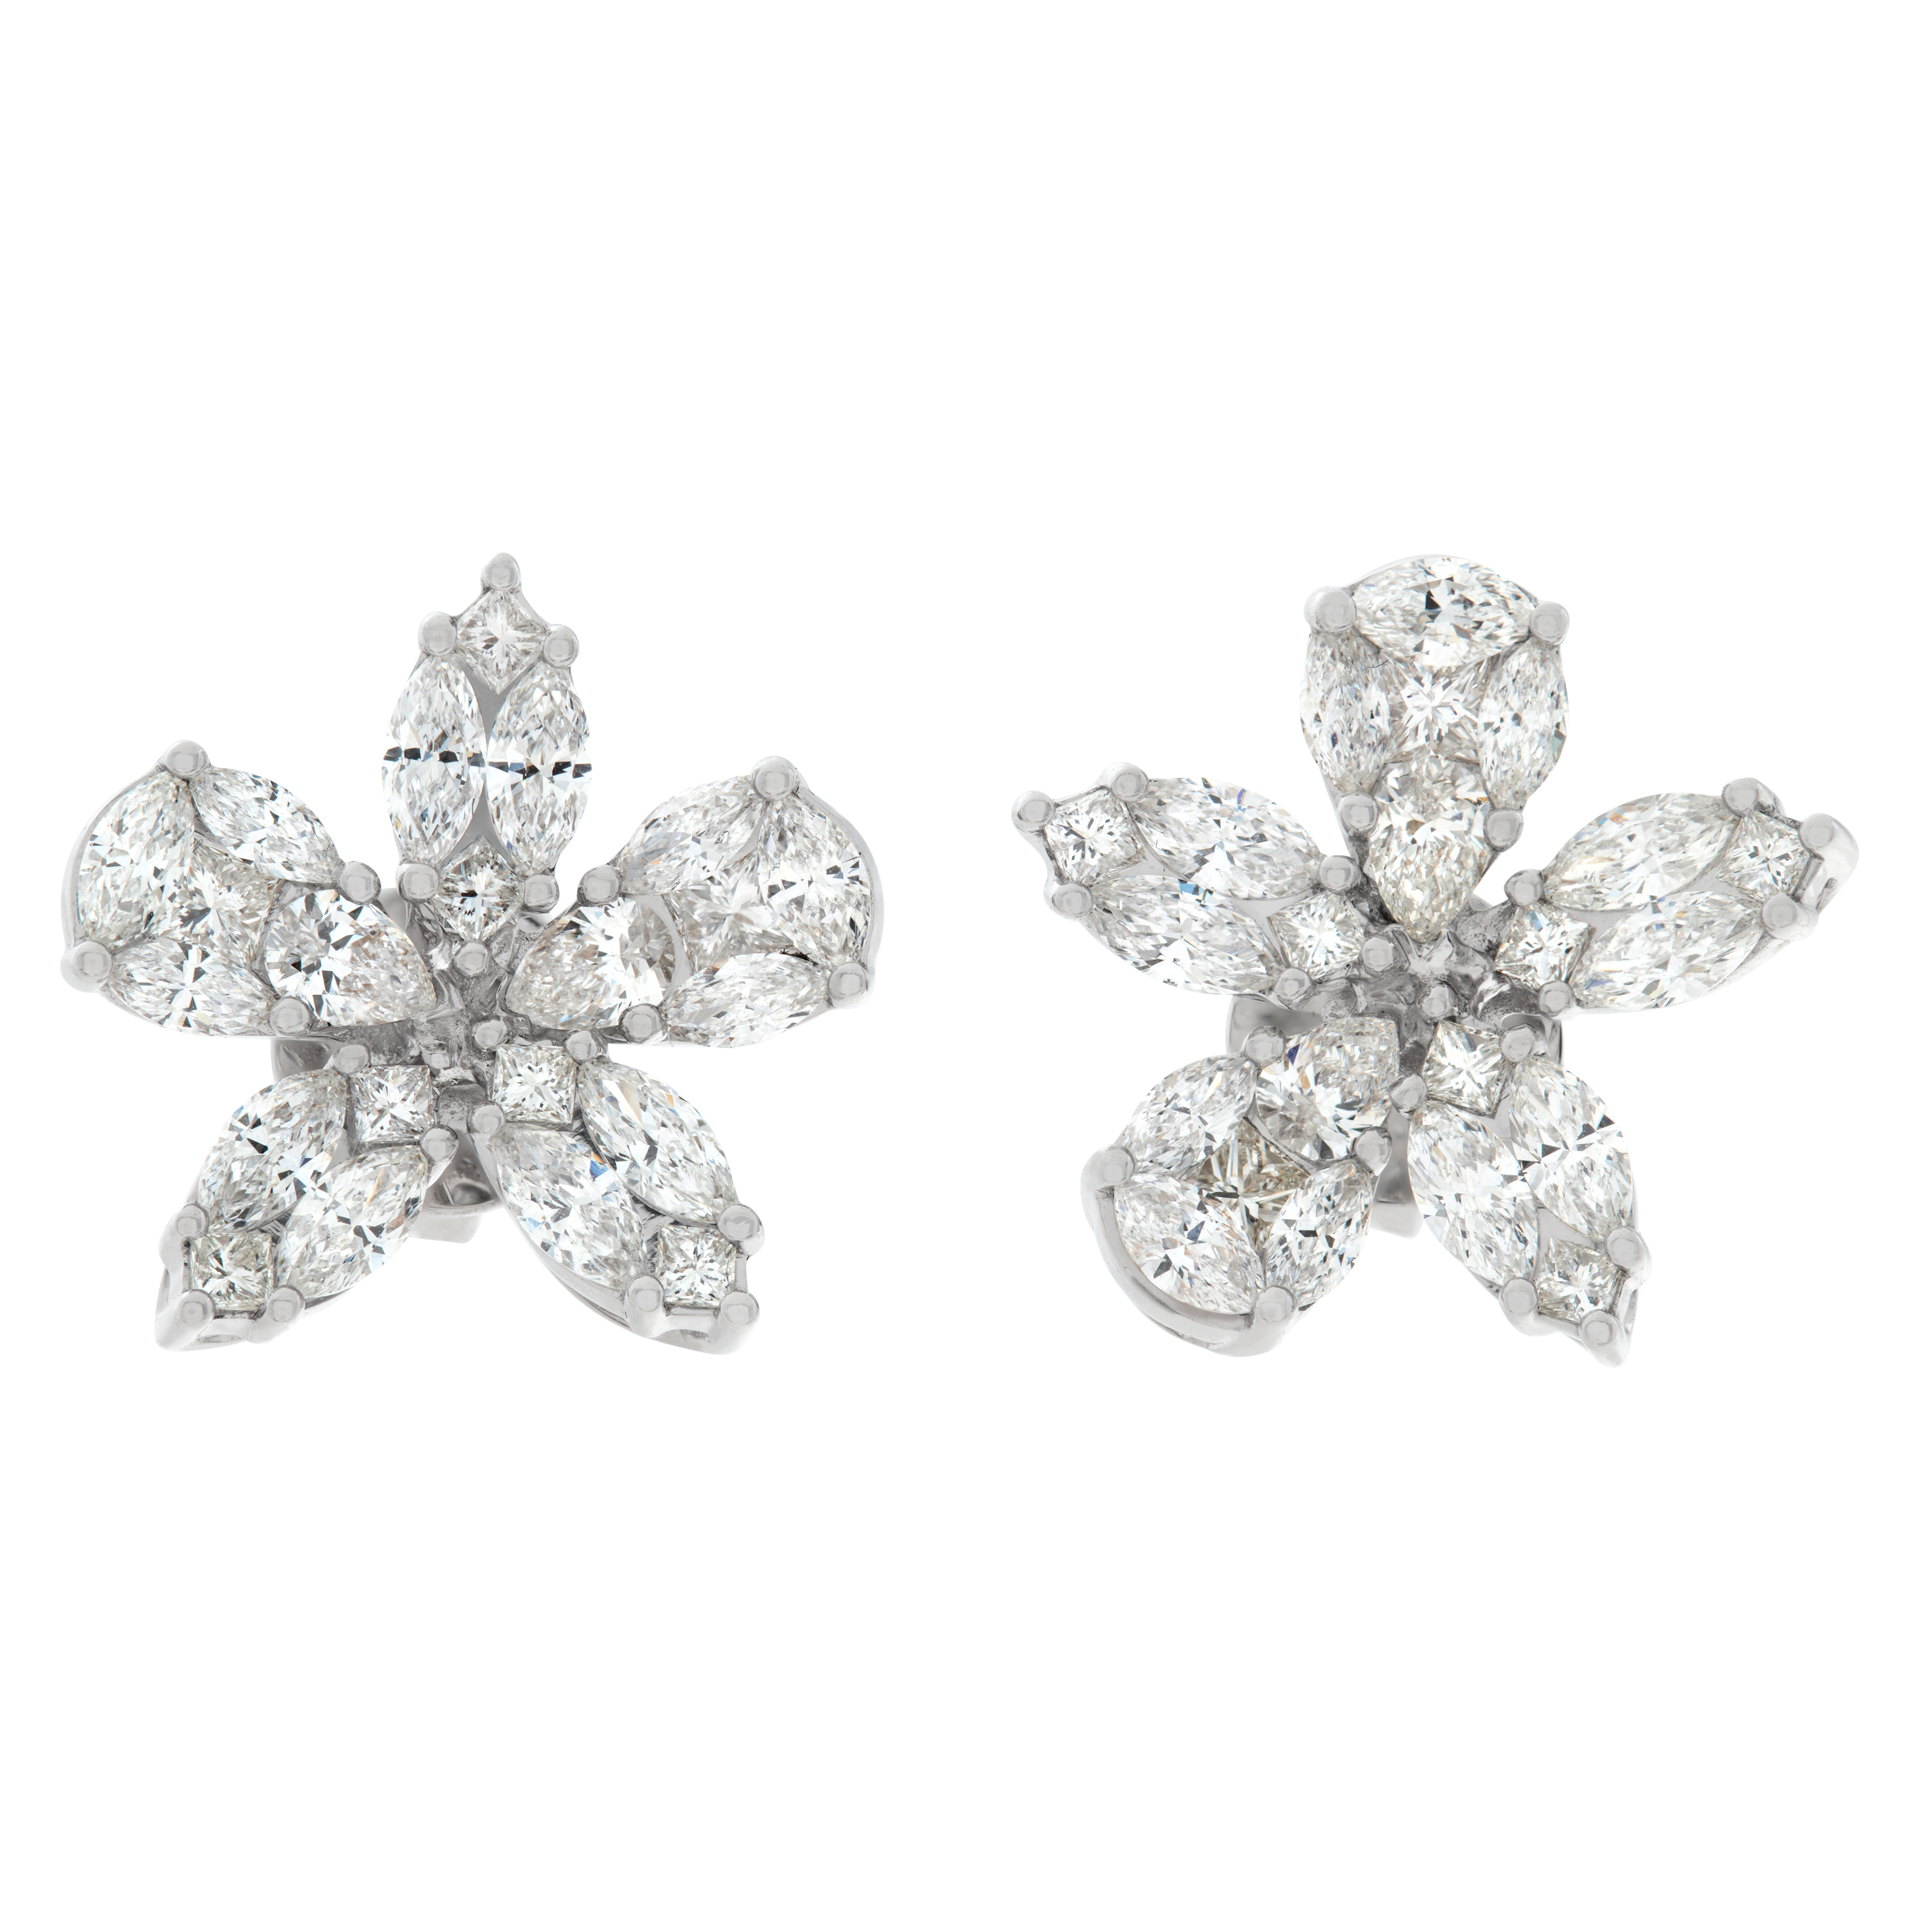 Flower shaped illusion set diamond earrings in 18k white gold